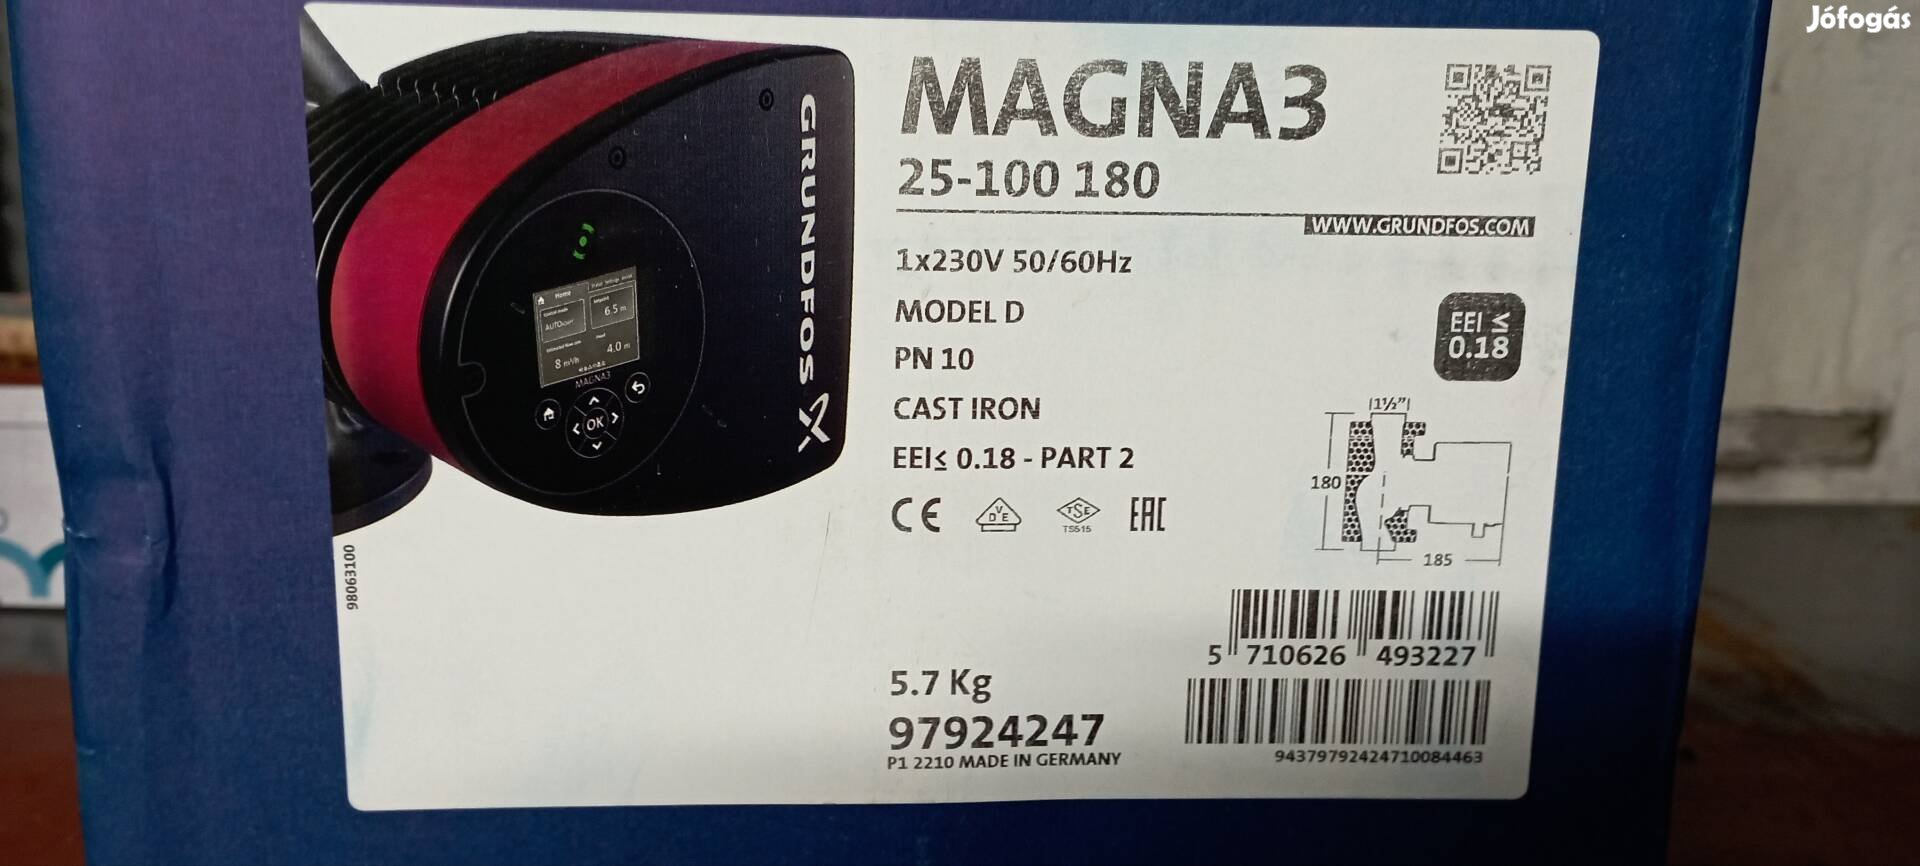 Grundfos Magna 3